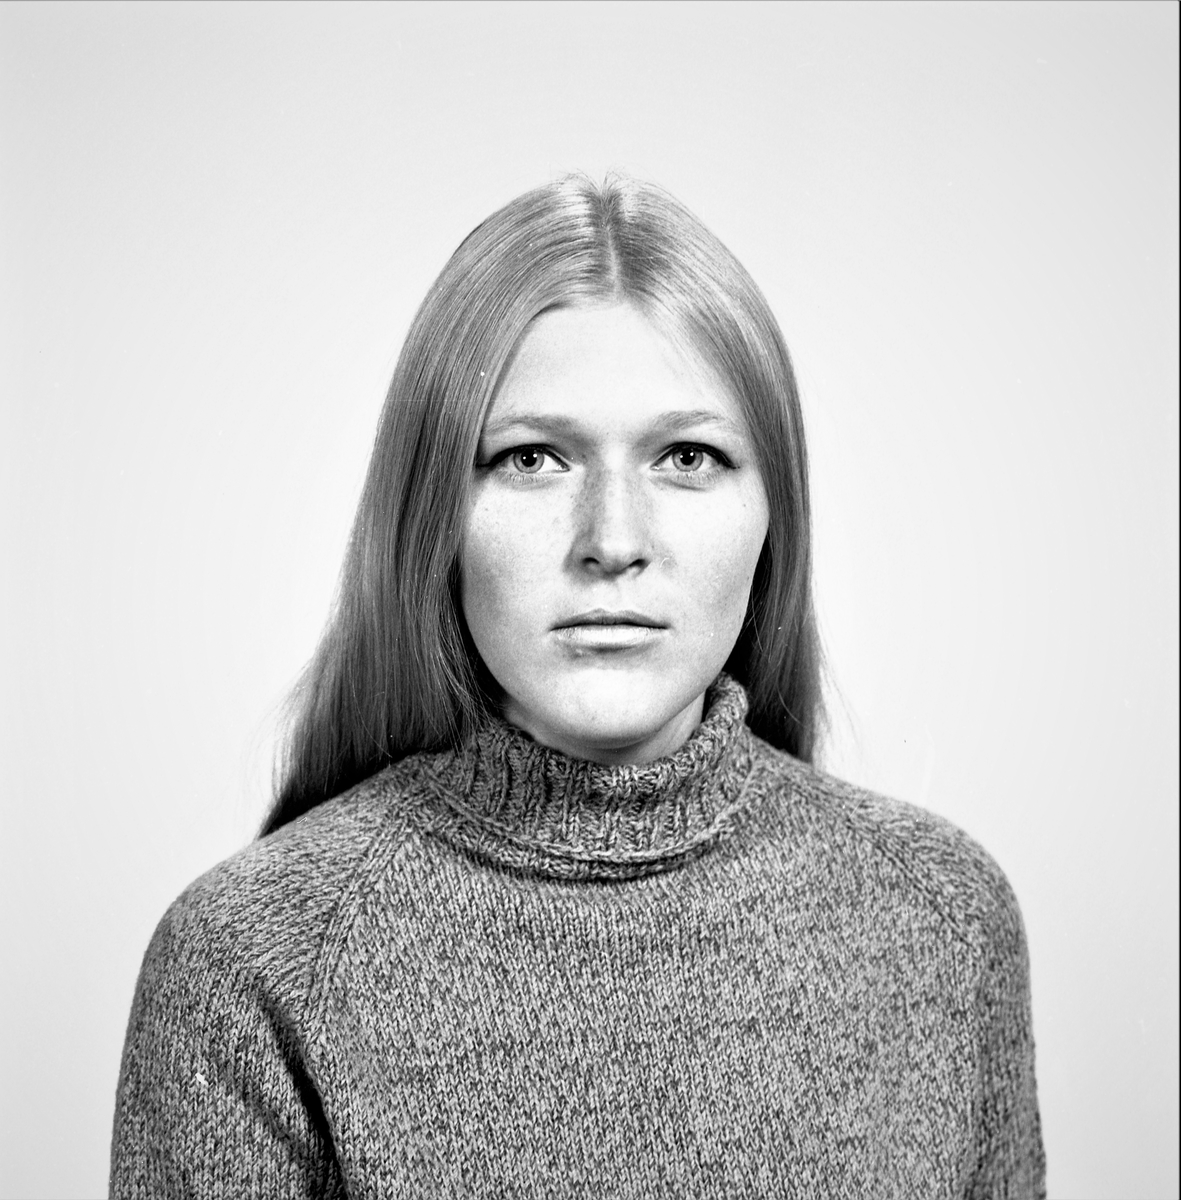 Portrett. Ung kvinne med langt mørkblondt hår i mørk flerfarget høyshalset strikkegenser. Bestilt av Else J. Stava. Øvregt. 199